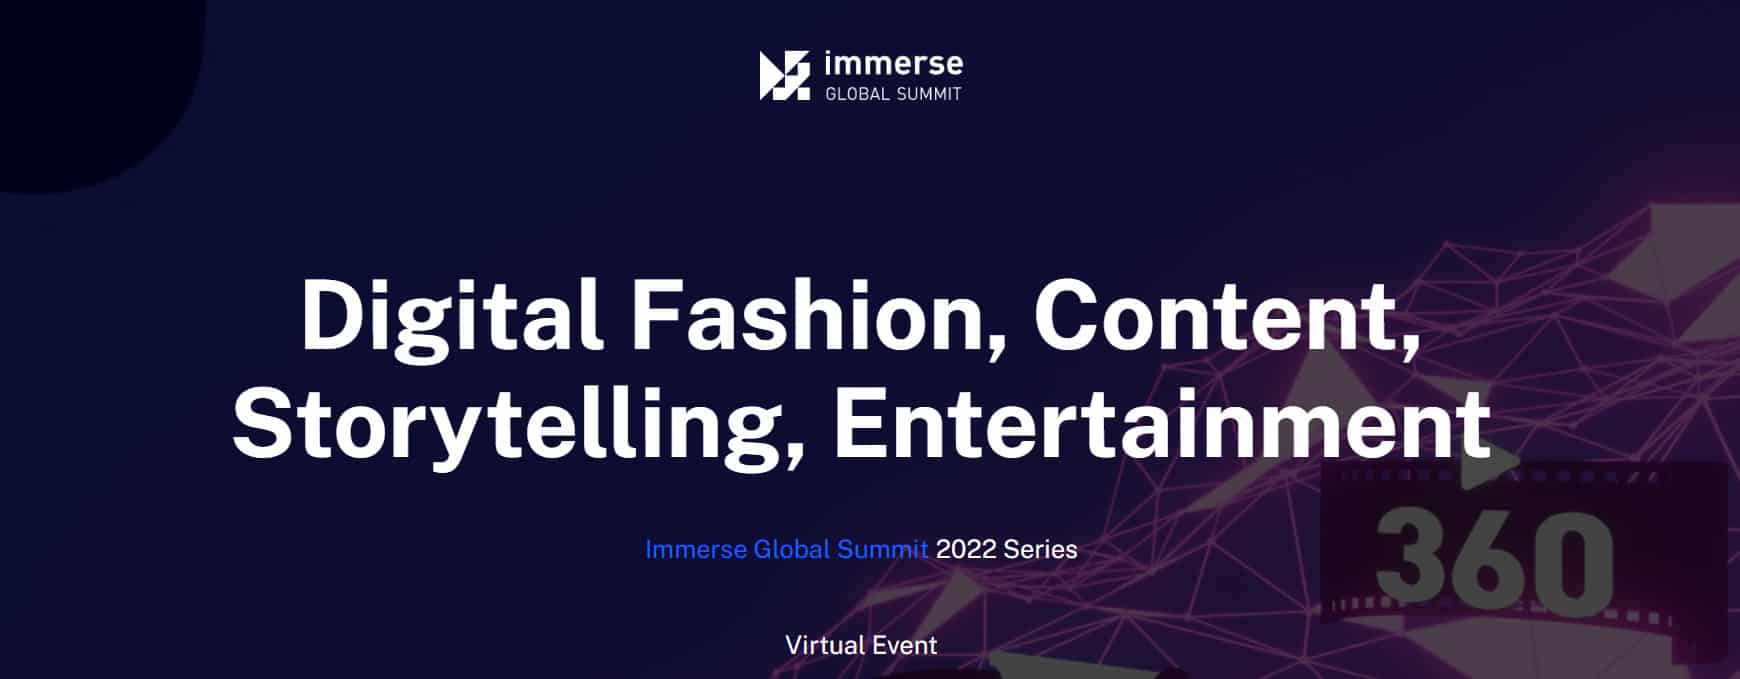 Immerse – Digitale Mode, Inhalte, Storytelling, Unterhaltung